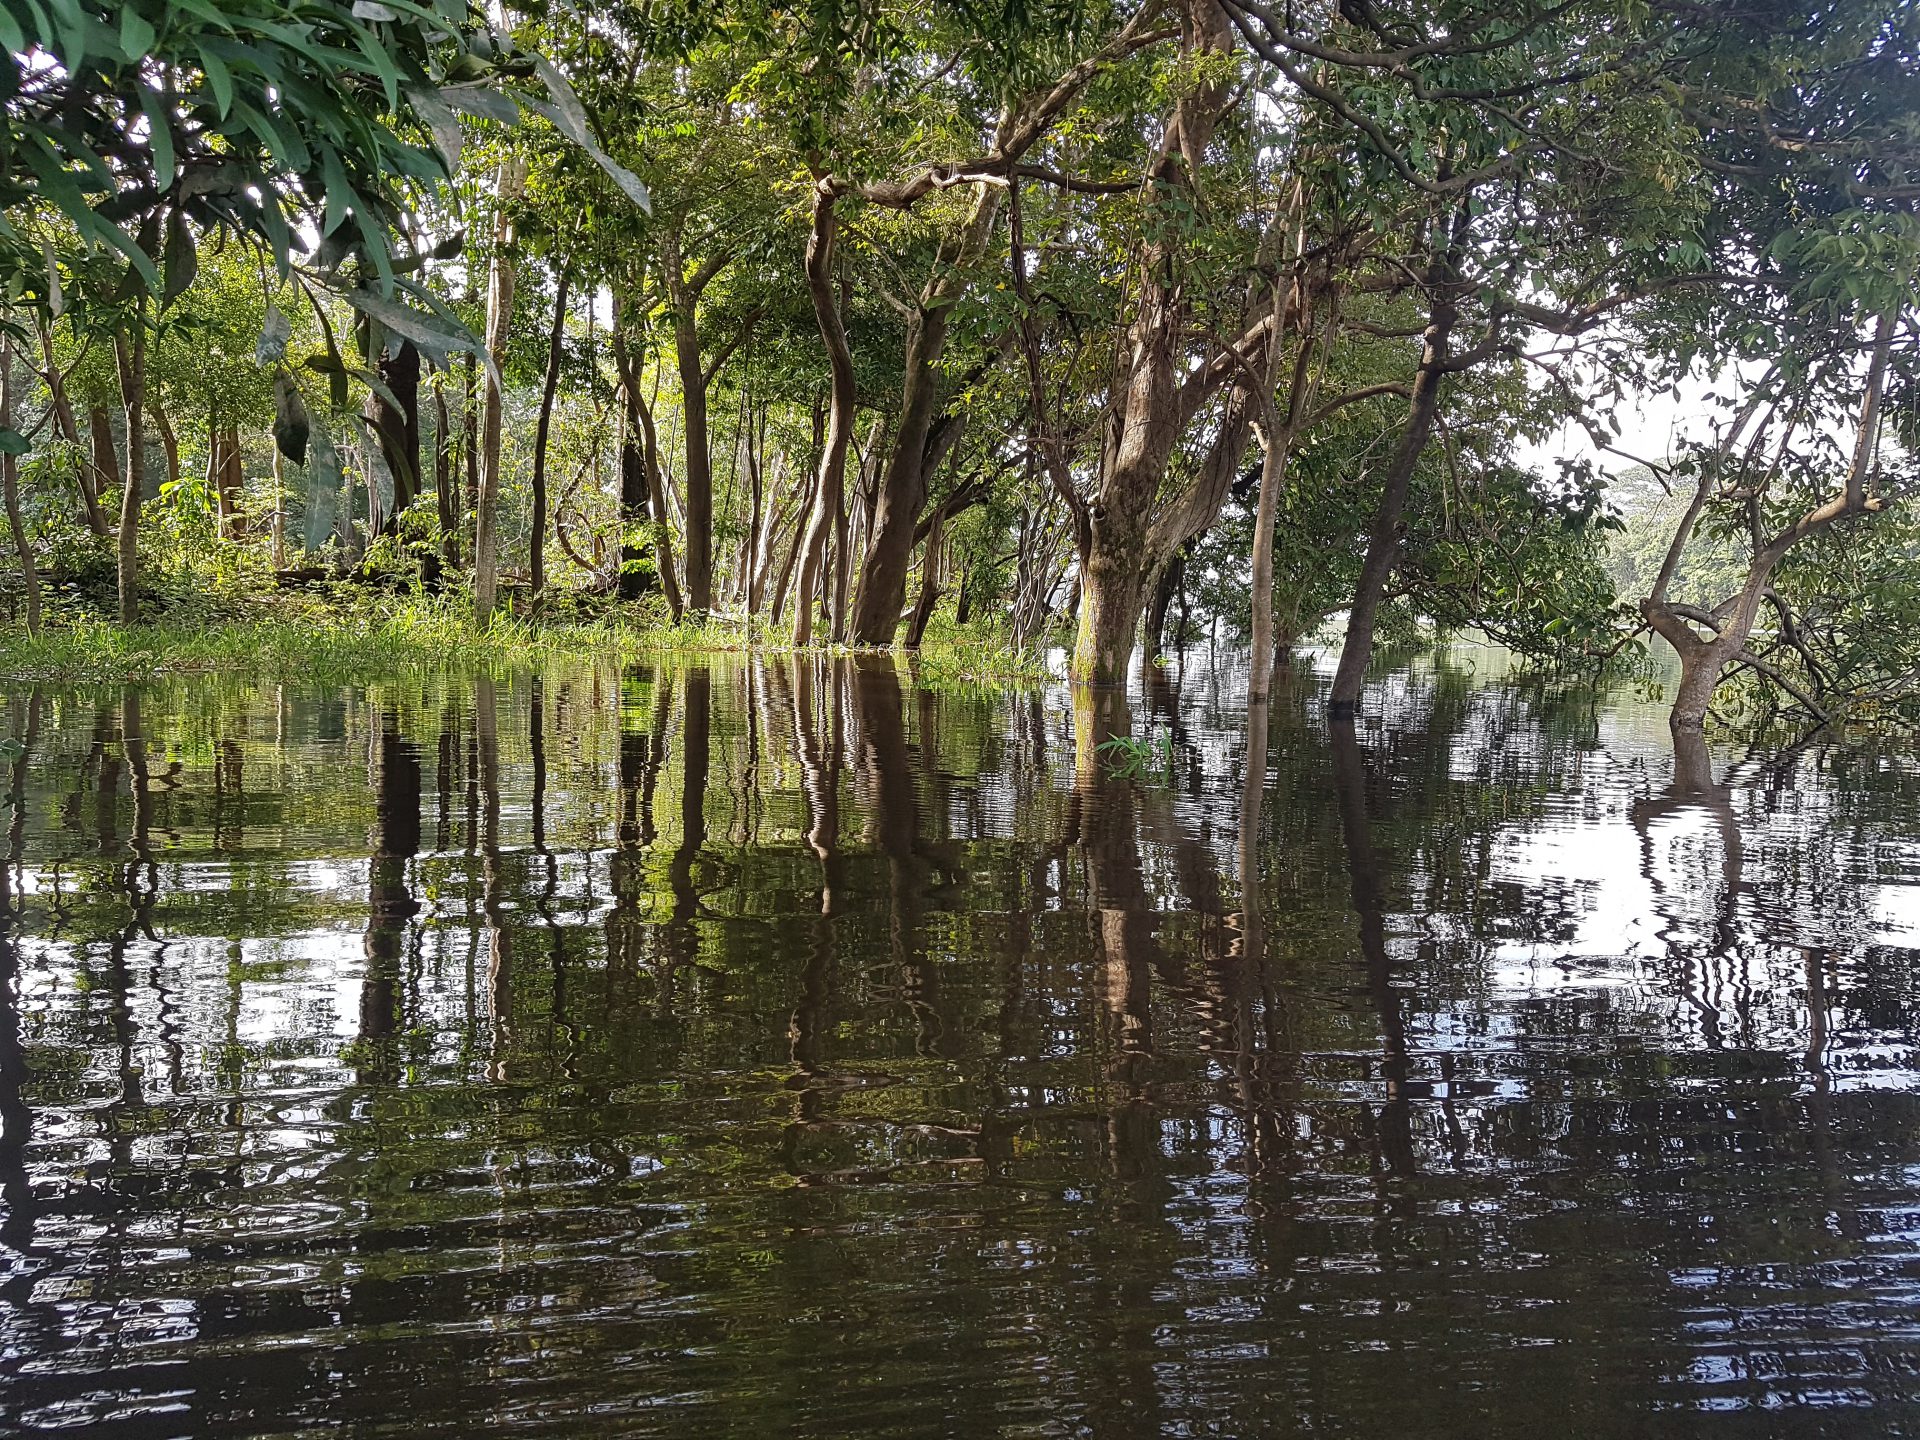 Amazonas Reise Erfahrung Blog Regenwald Tour Fluss Brasilien Manaus Dschungel Hängematte